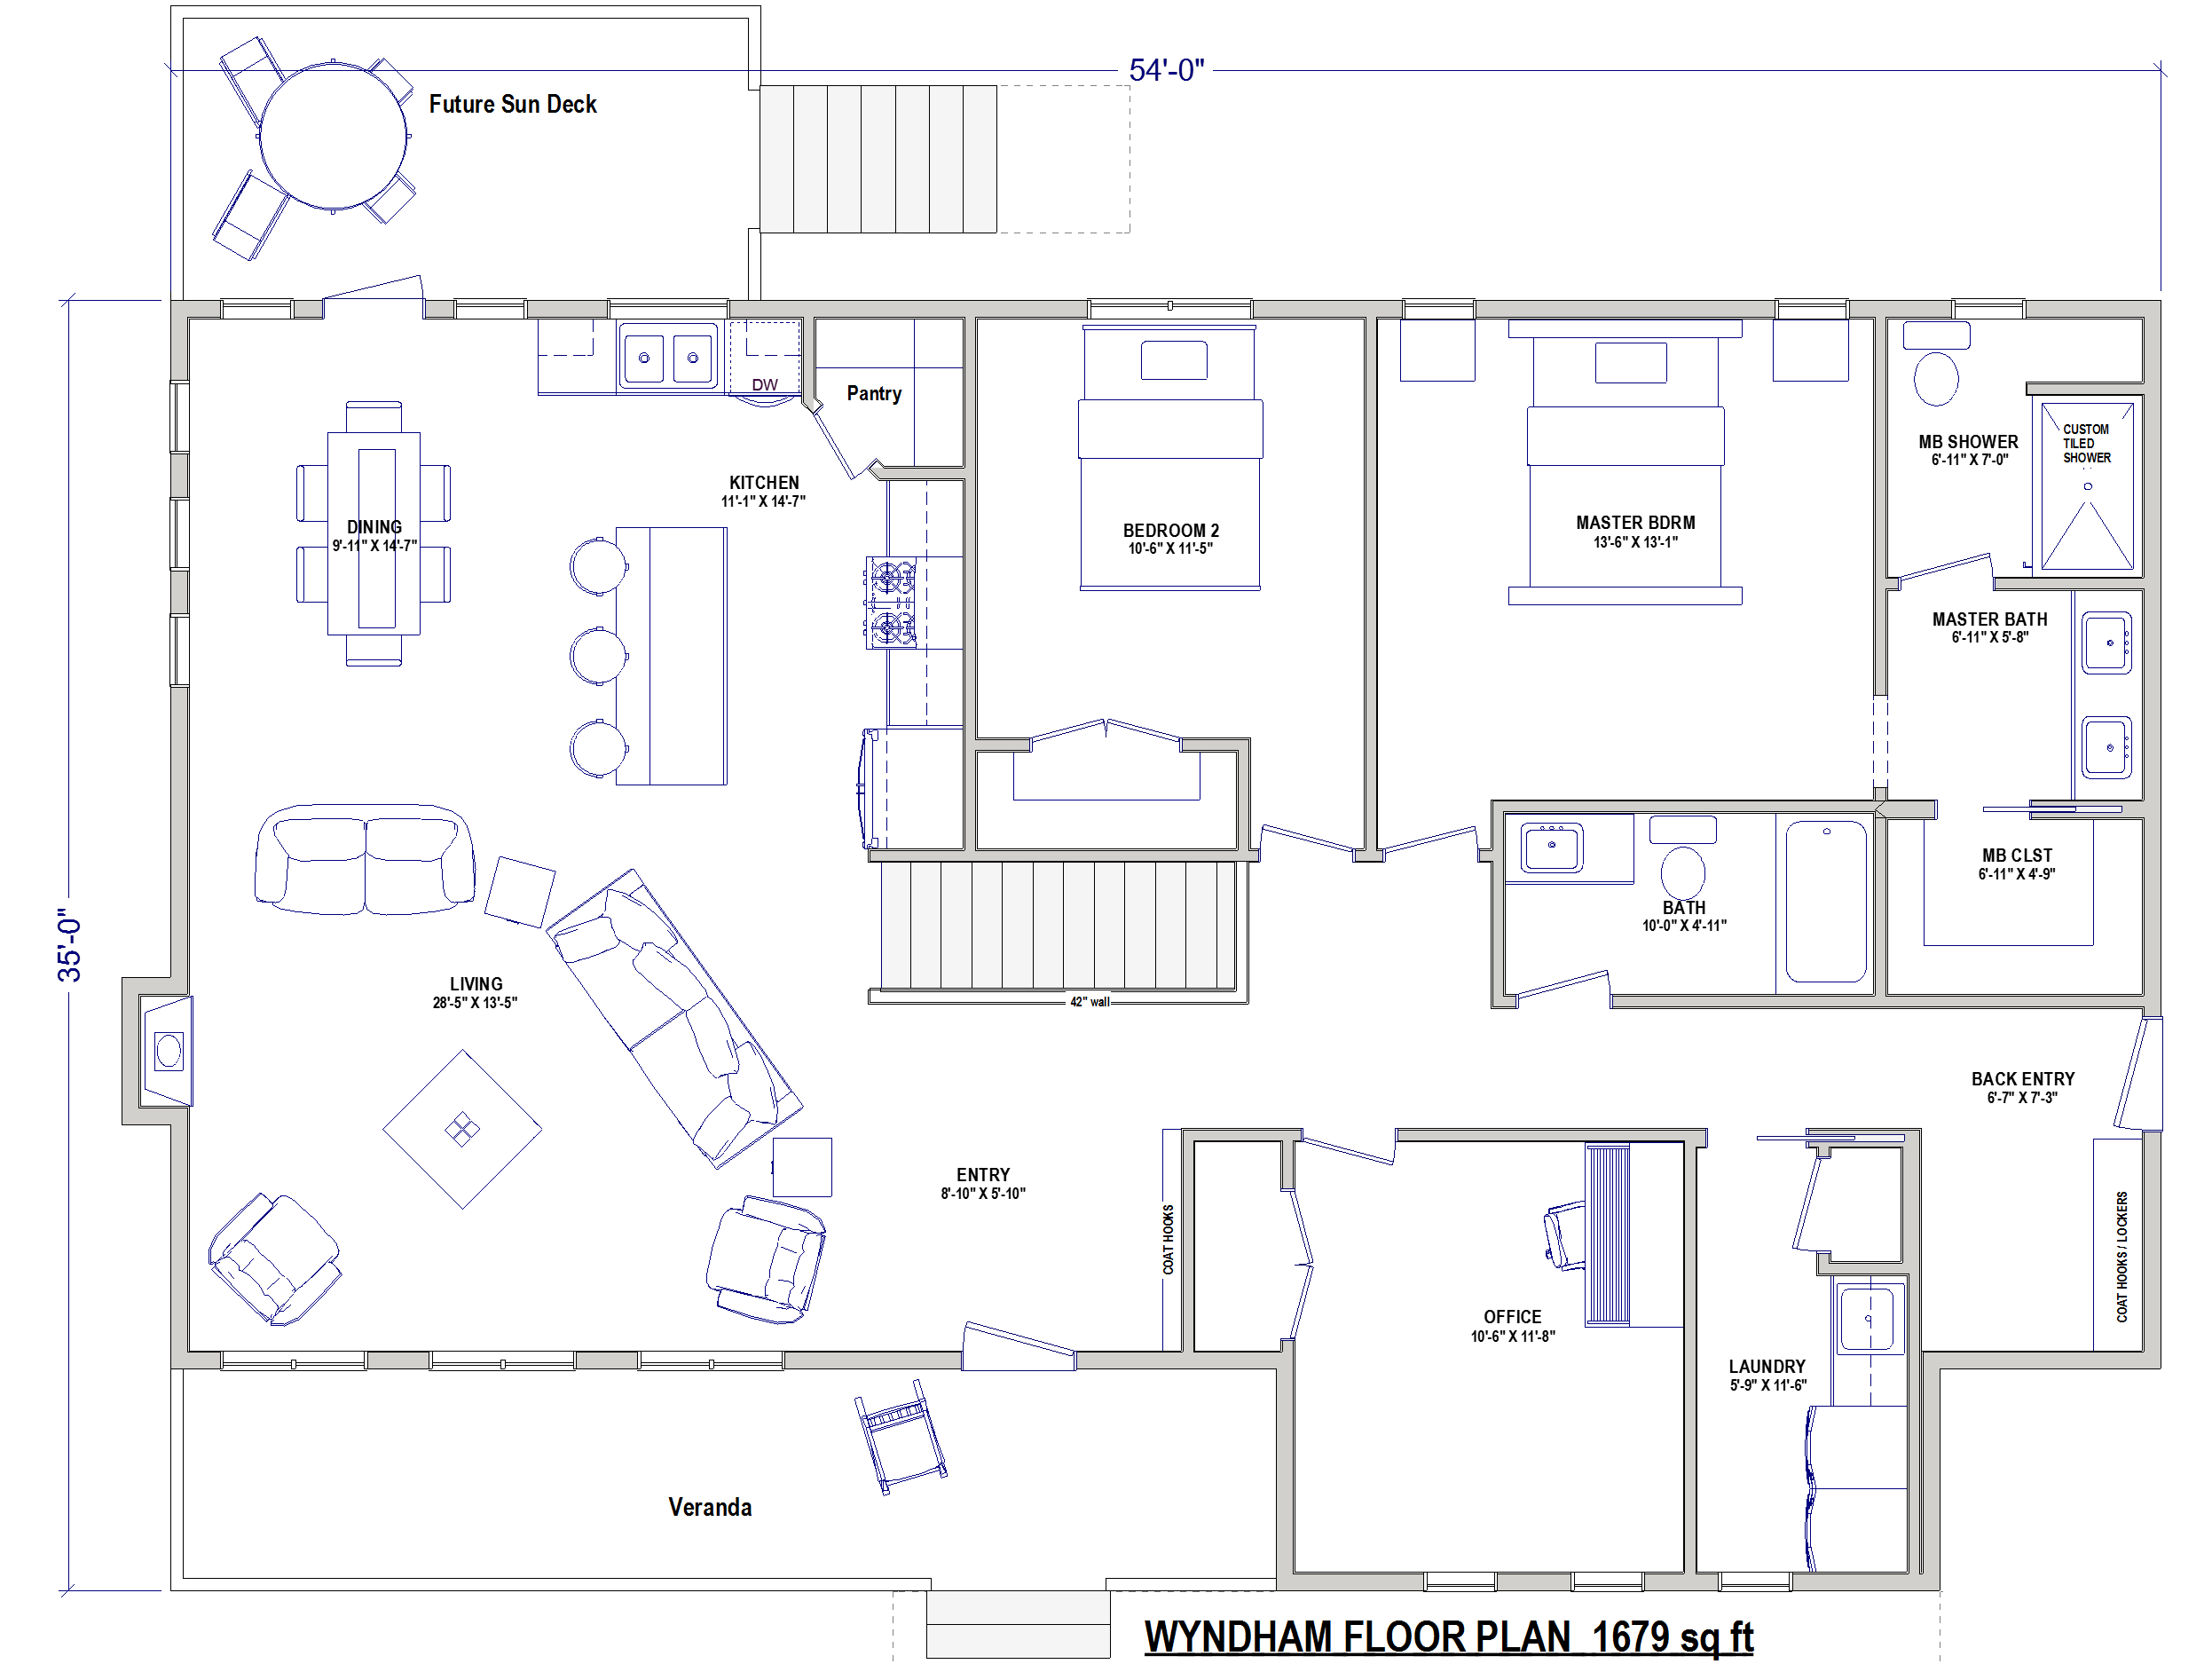  RTM Home Wyndham layout